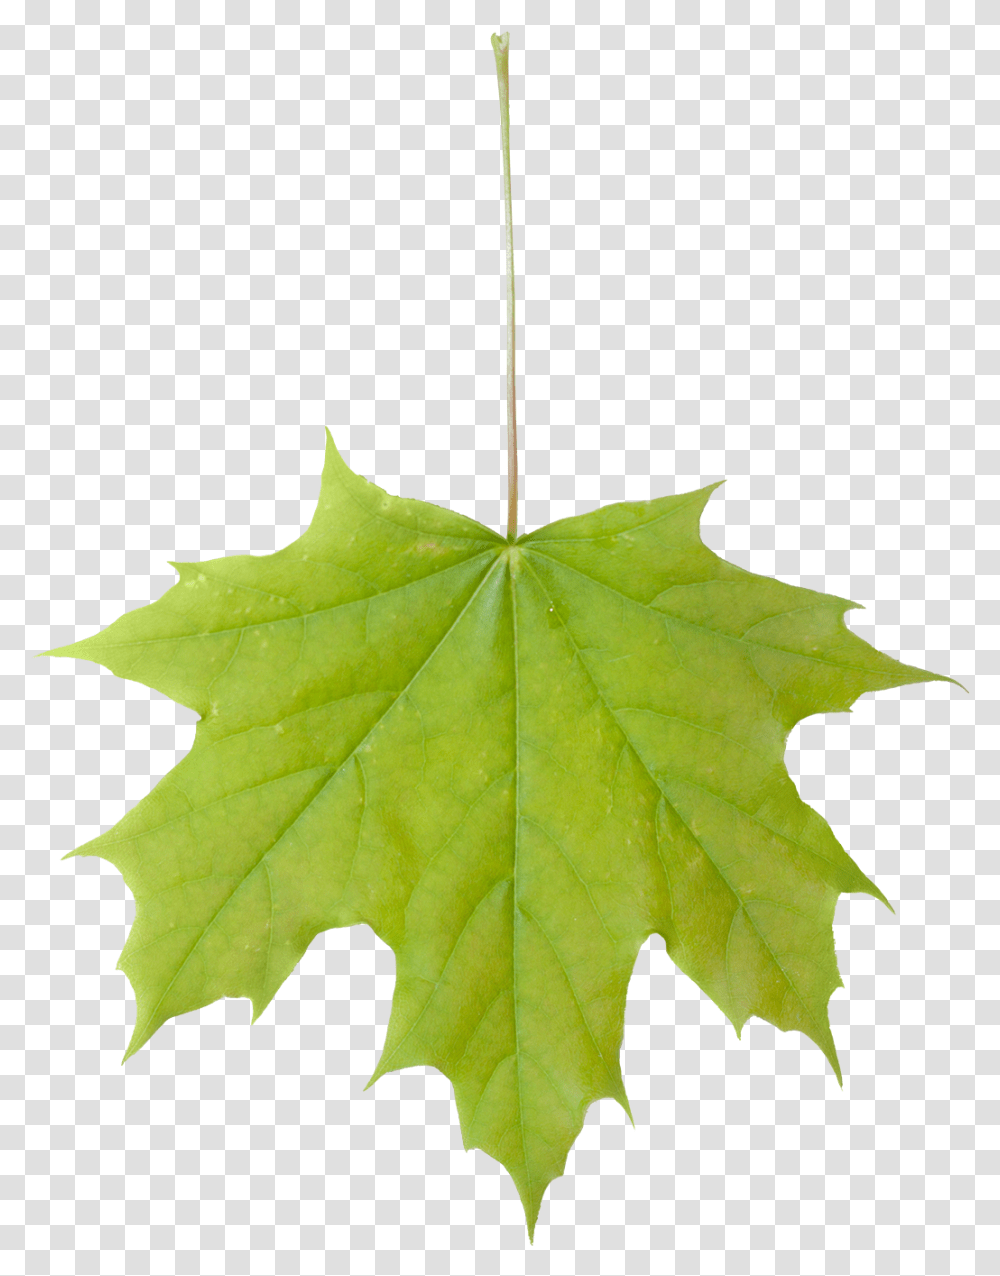 Vegetation Leaf Maple, Plant, Tree, Maple Leaf Transparent Png